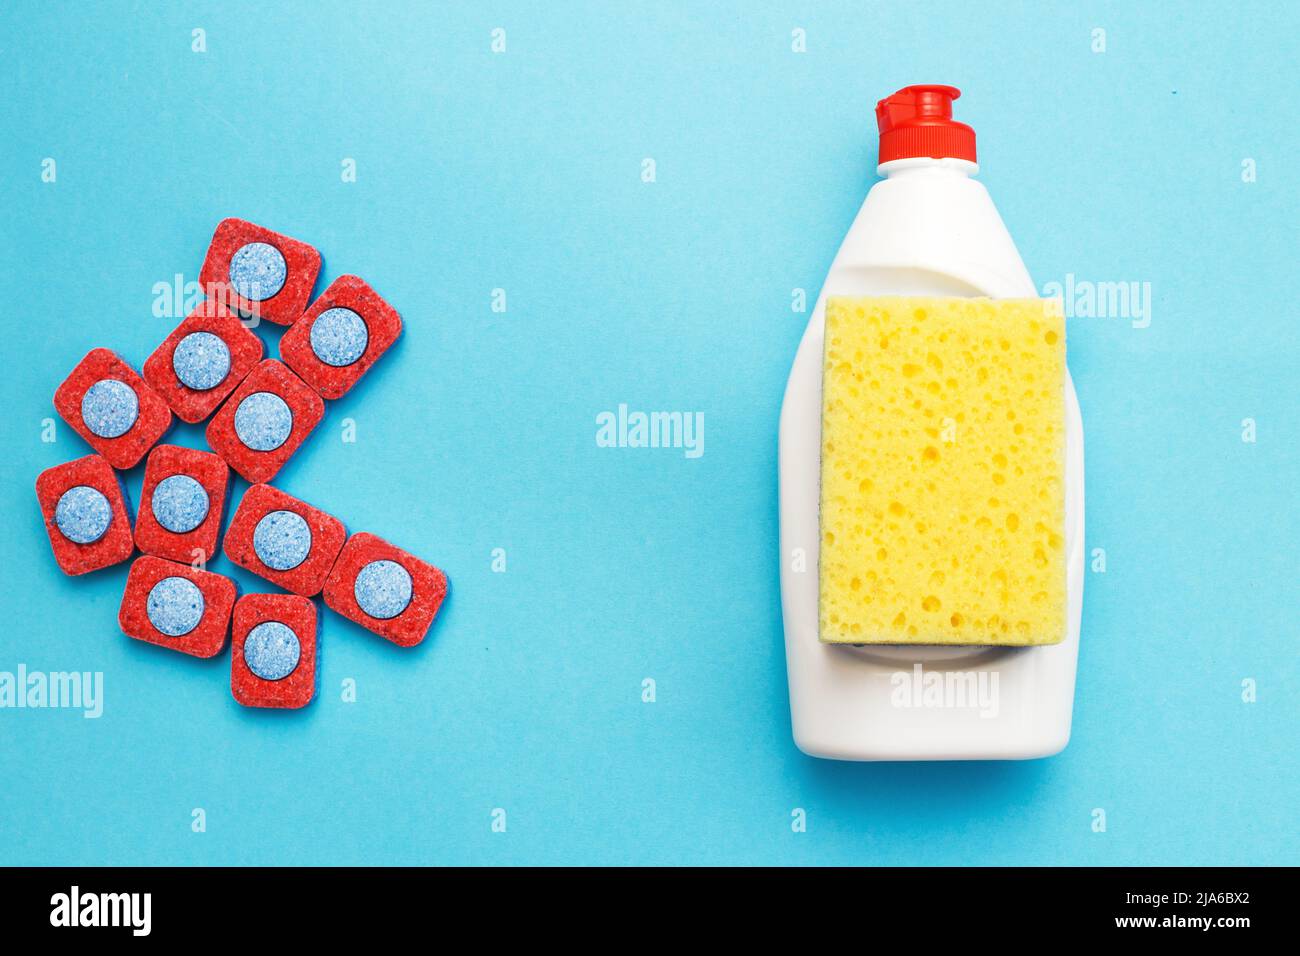 Pastillas, cápsulas o gel: ¿Qué detergente es mejor para el